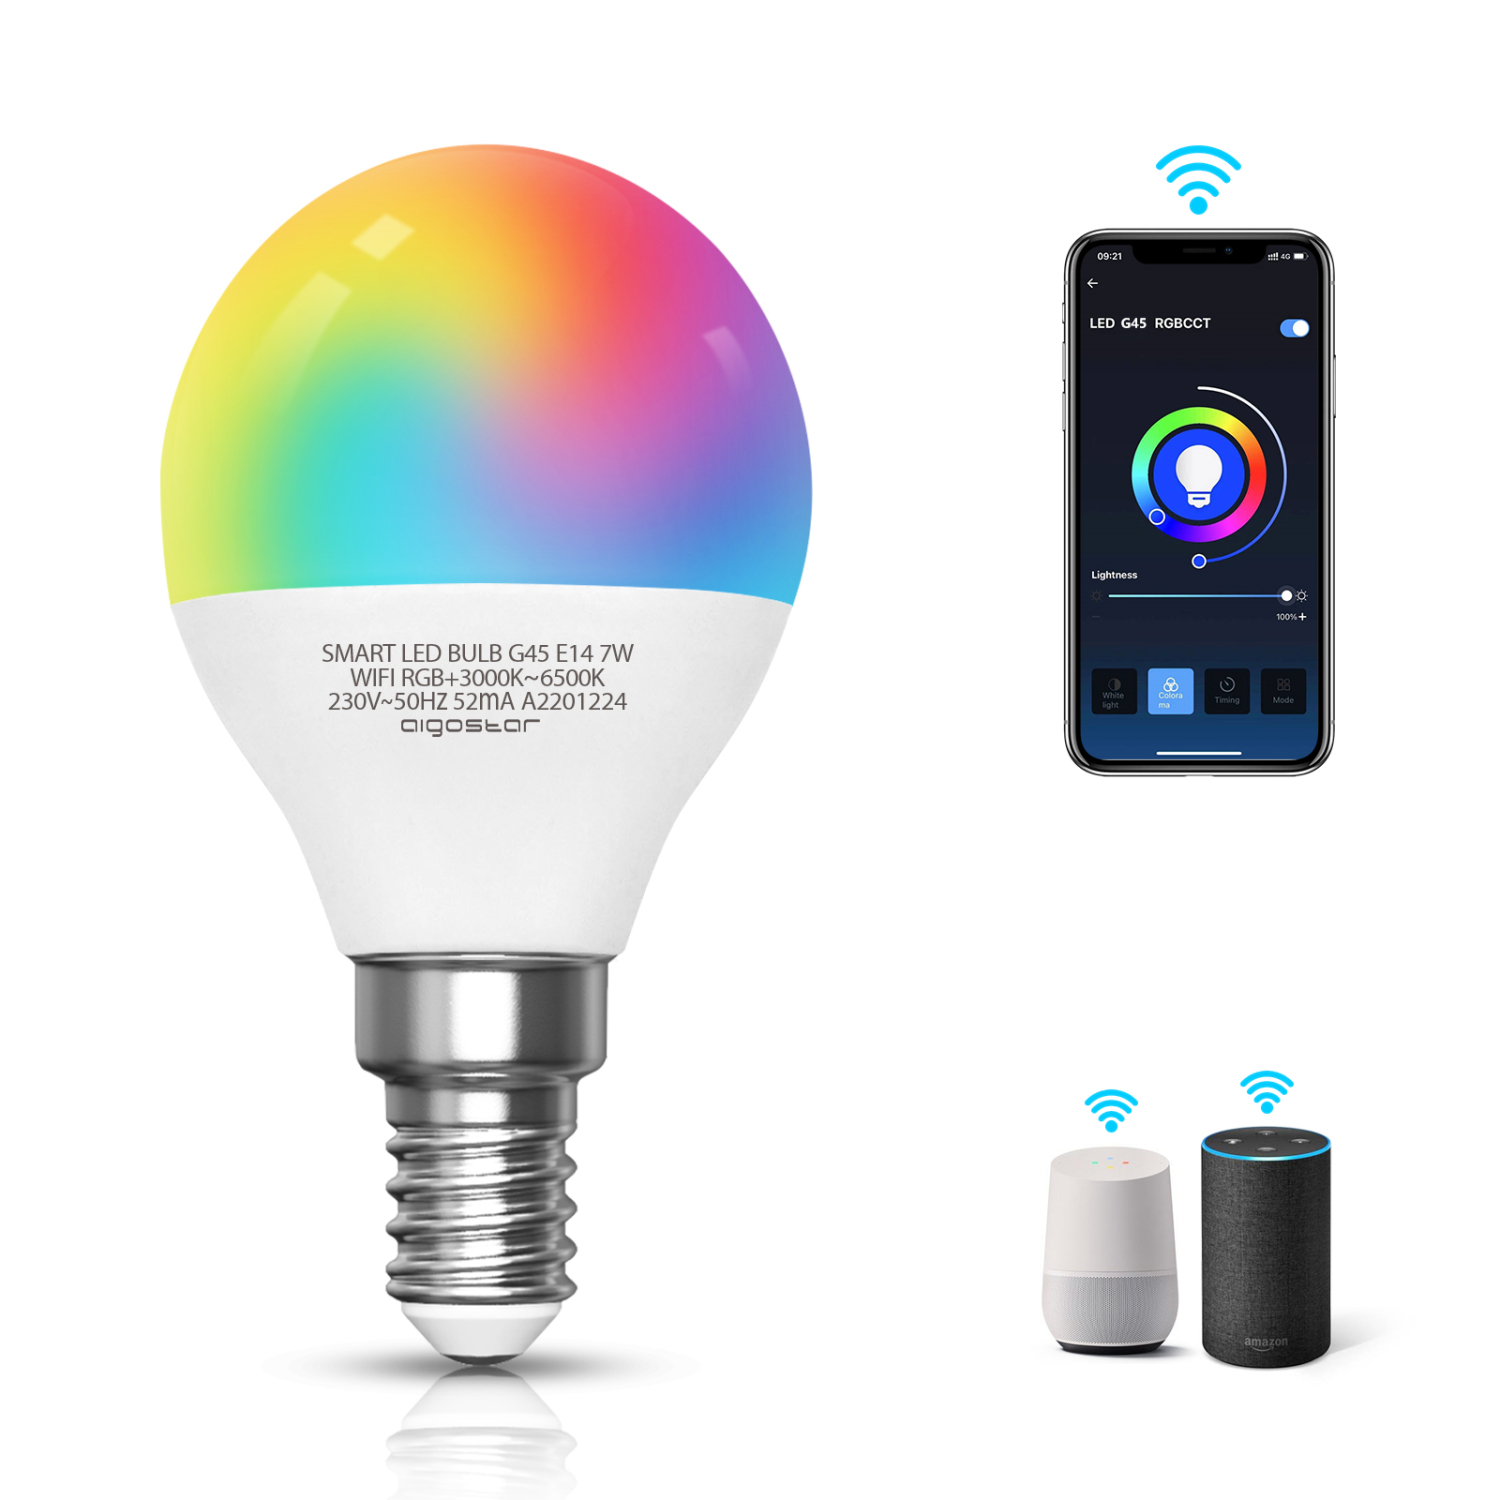 Aigostar lampadina led smart G45 E14 attacco piccolo 7W， Funziona con Alexa e Google Home. Dimmerabile bianca 3000k - 6500k o RGB multicolore [Classe energetica A +] （202828）